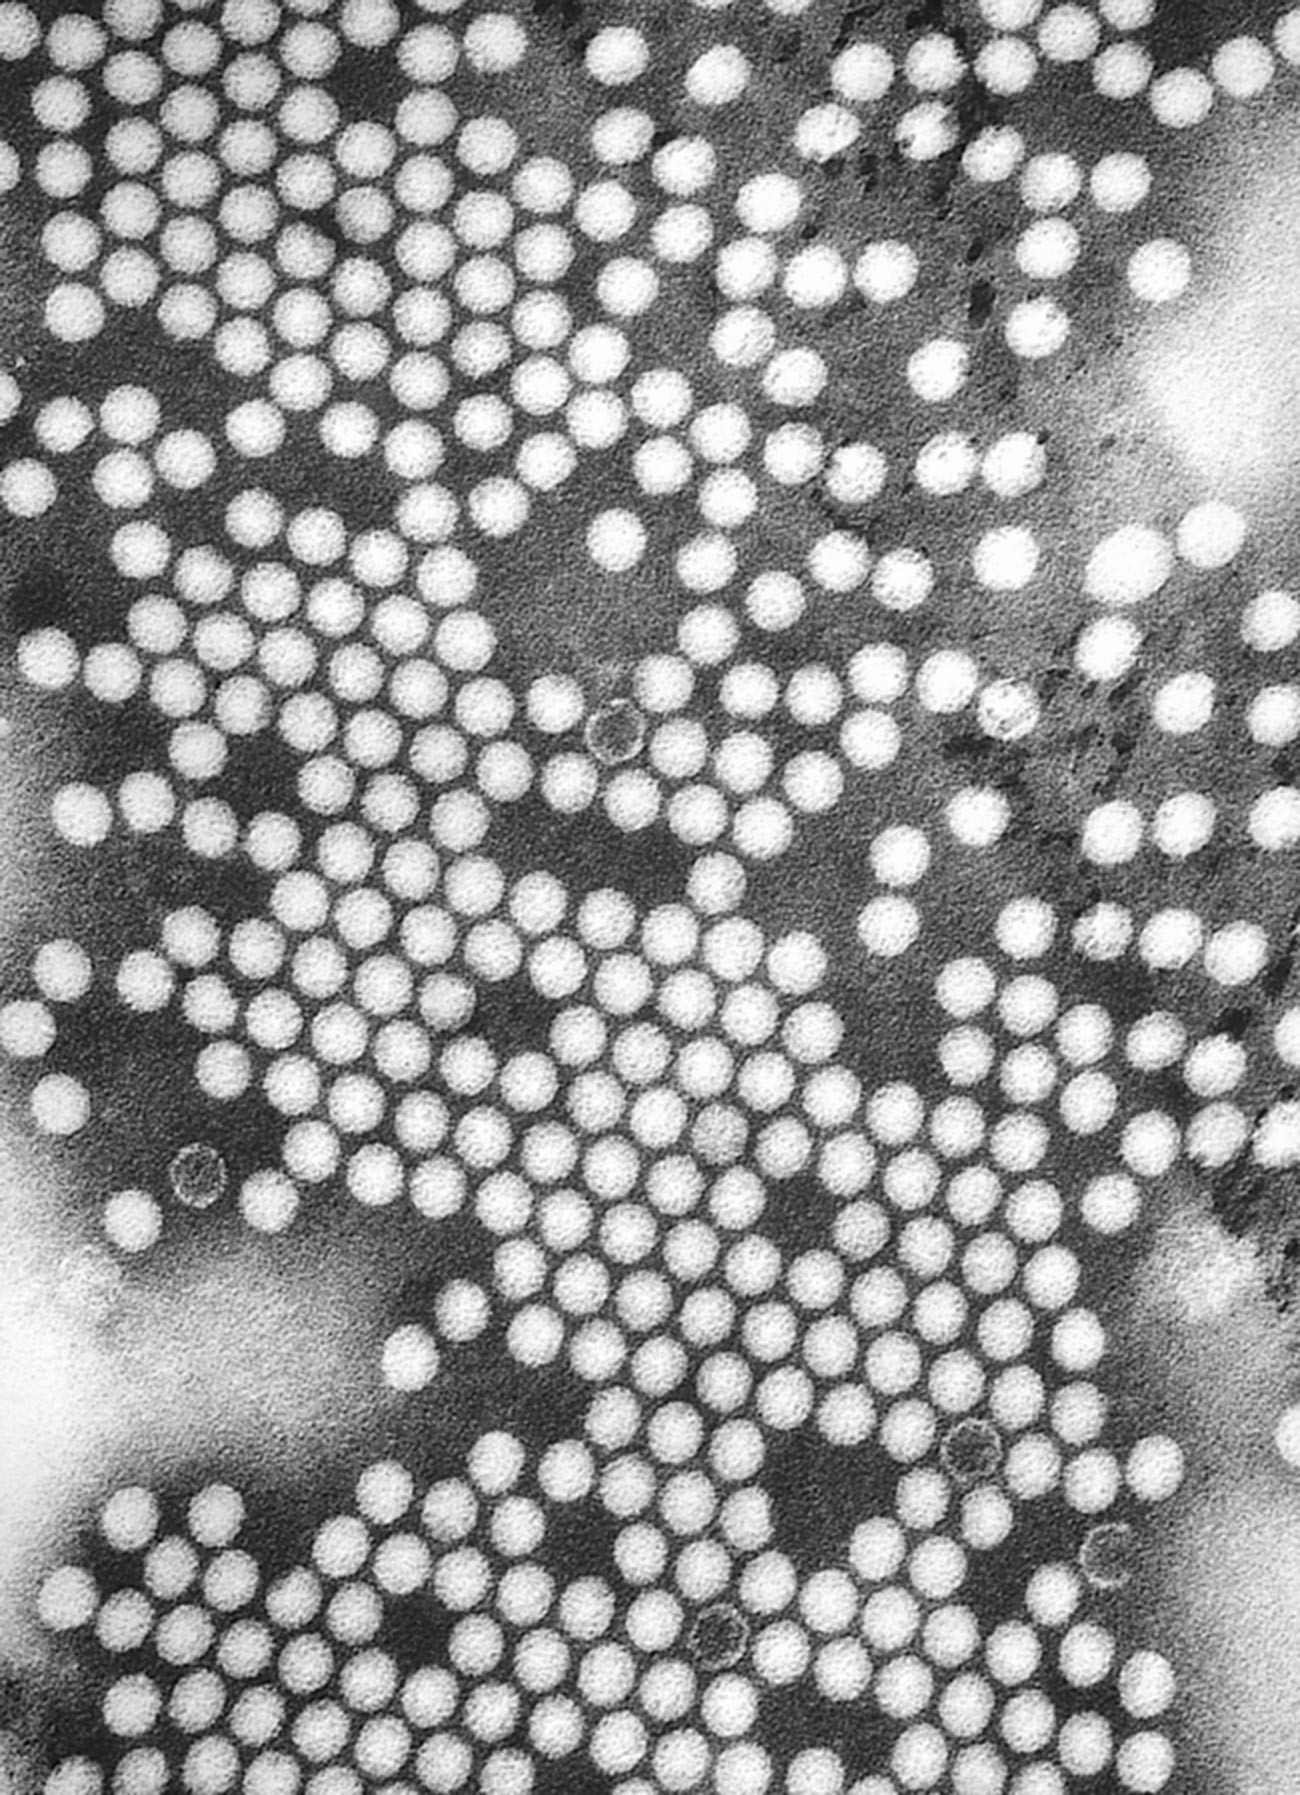 Elektronska mikro fotografija virusa poliomielitisa 